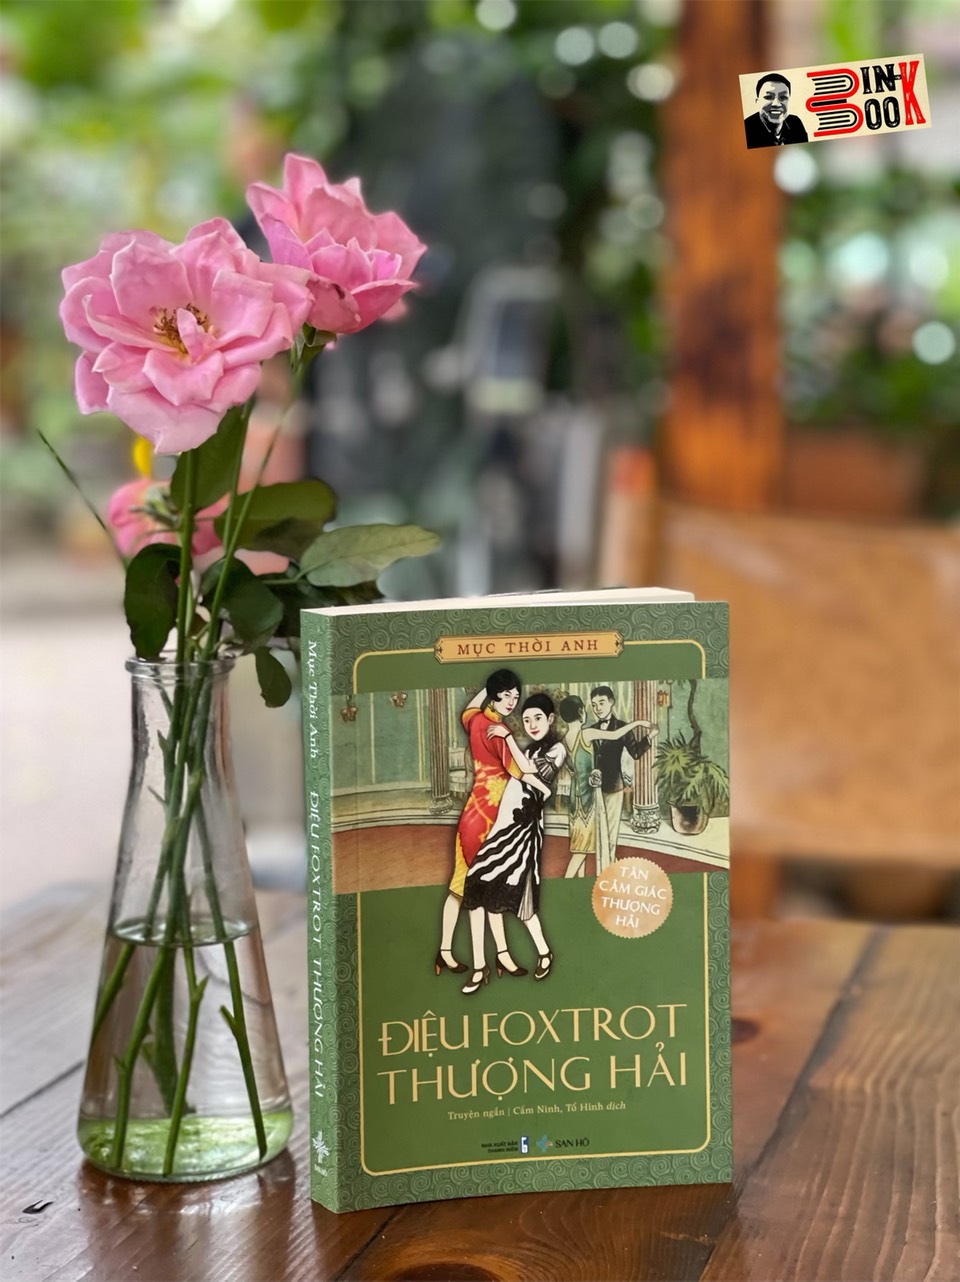 ĐIỆU FOXTROT THƯỢNG HẢI  – Mục Thời Anh – Cẩm Ninh, Tố Hinh dịch – San Hô Books